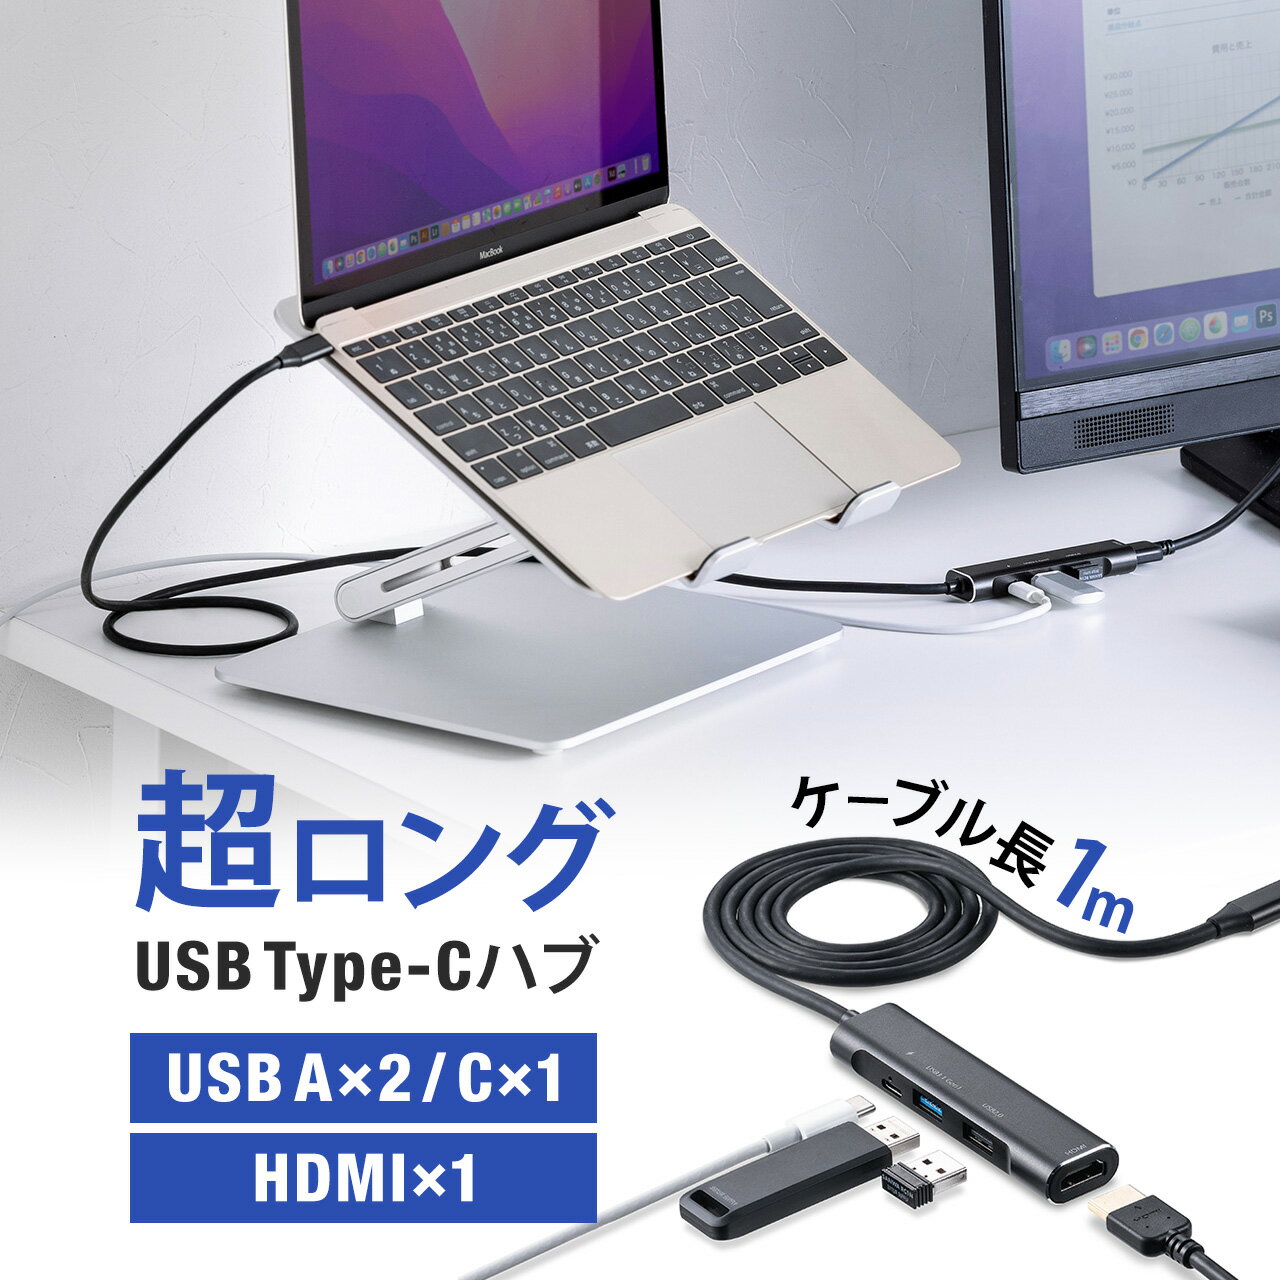 USB Type-C ドッキングステーション USBハブ モバイルタイプ PD 60W 4K 4in1 HDMI USB3.2 USB2.0 ケーブル1m サンワサプライ